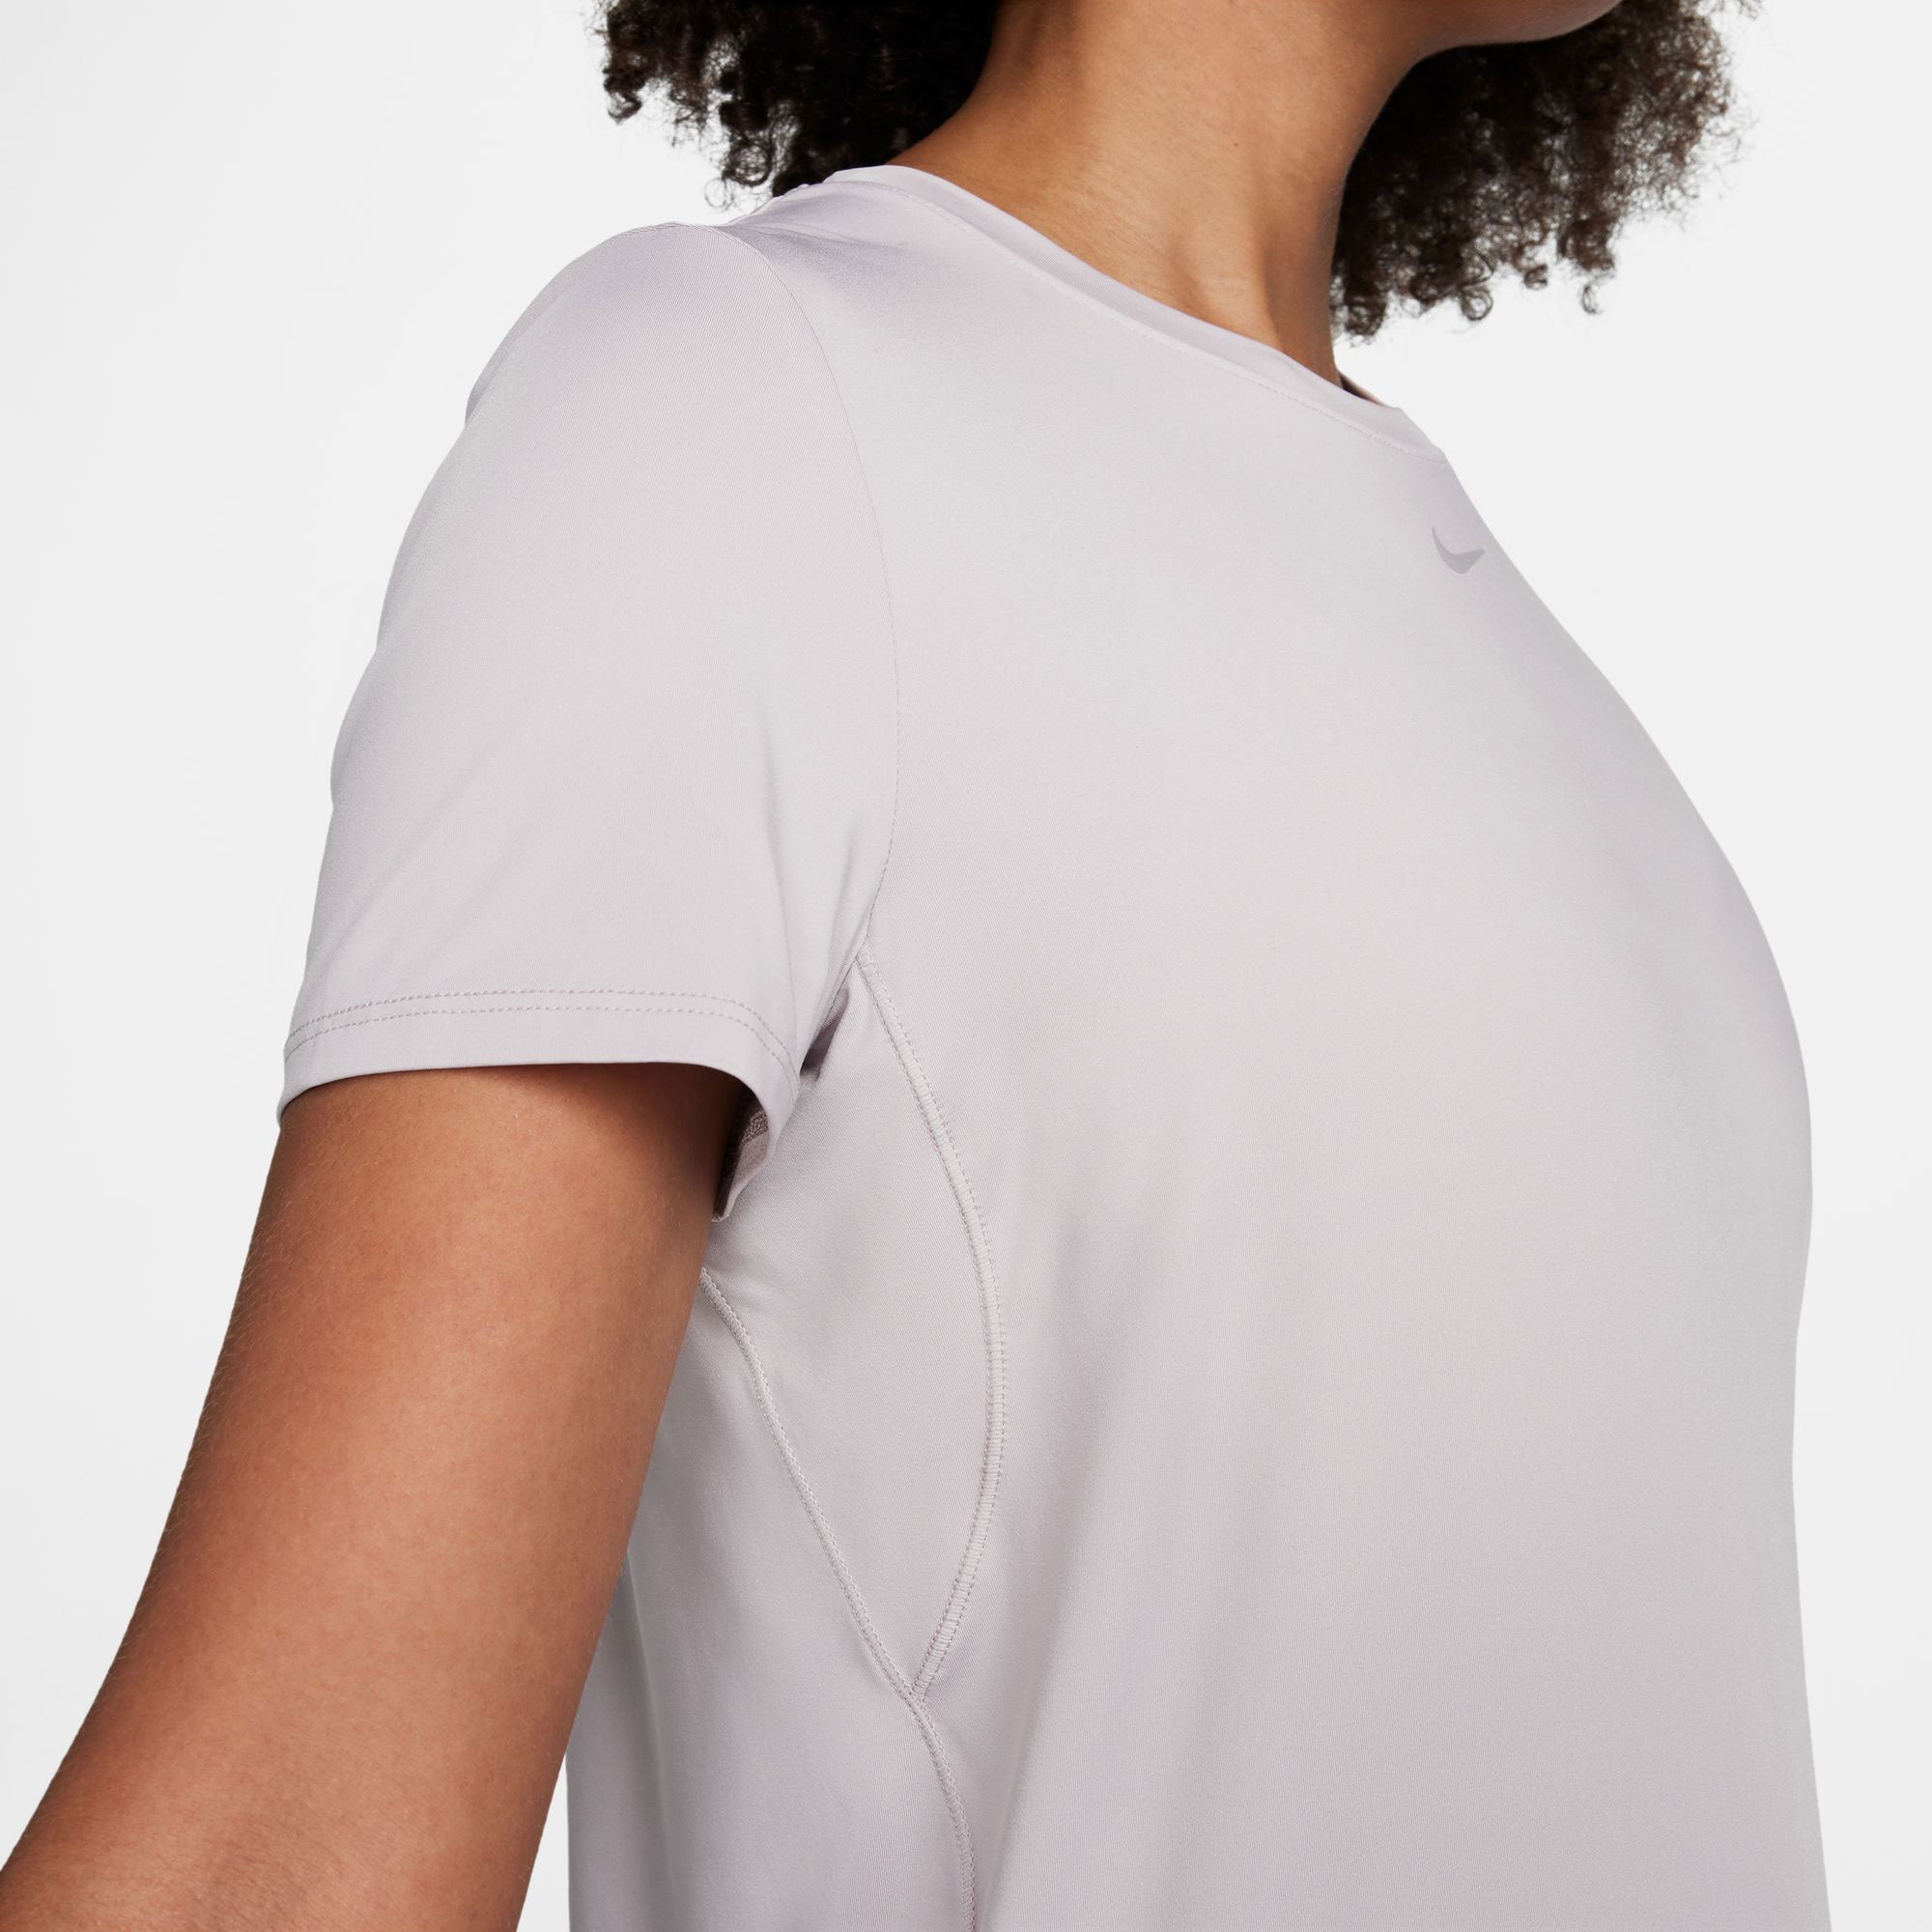 Nike One Classic Women's Dri-FIT Shirt - Grey (4)